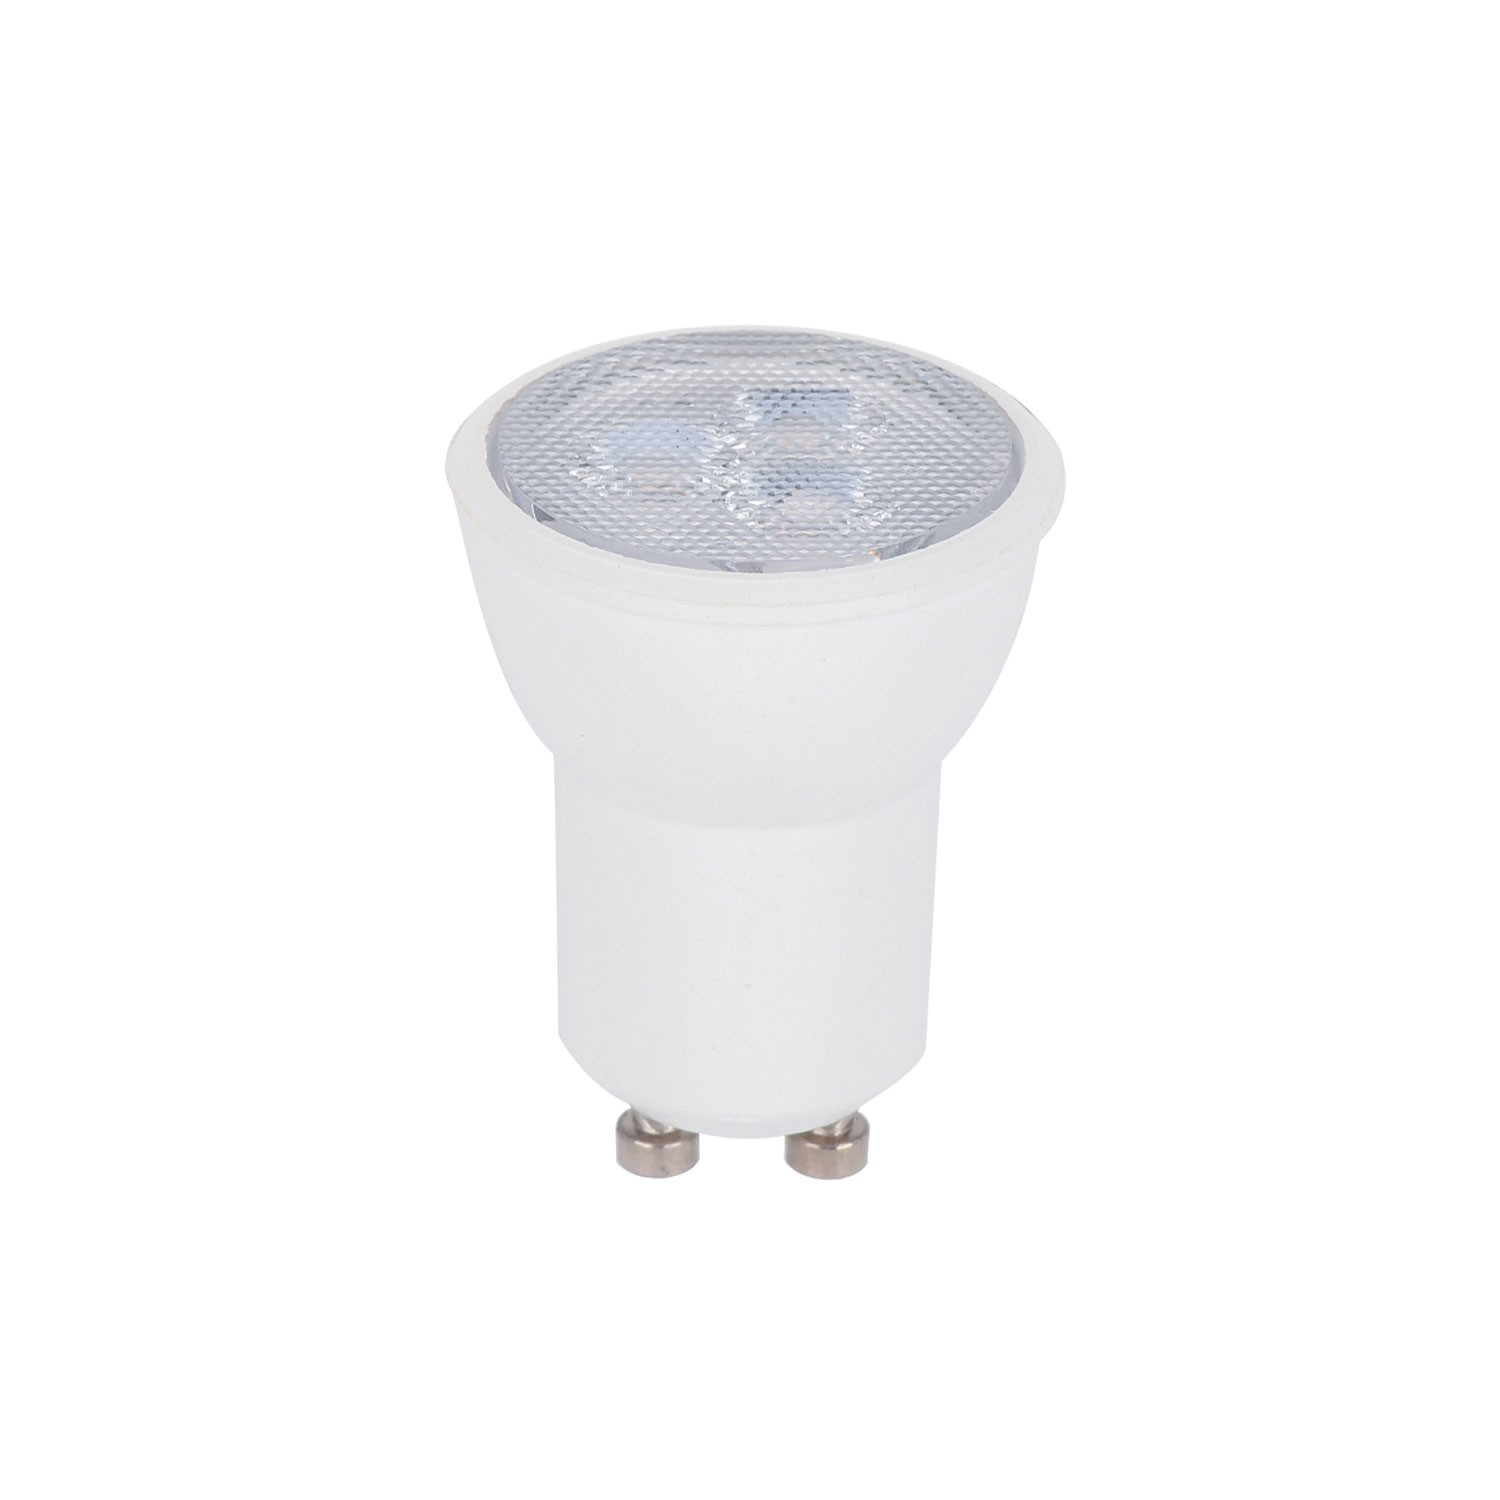 Fermaluce Flex 30 lampa med mini takkopp, strömbrytare och mini GU1d0 spotlight